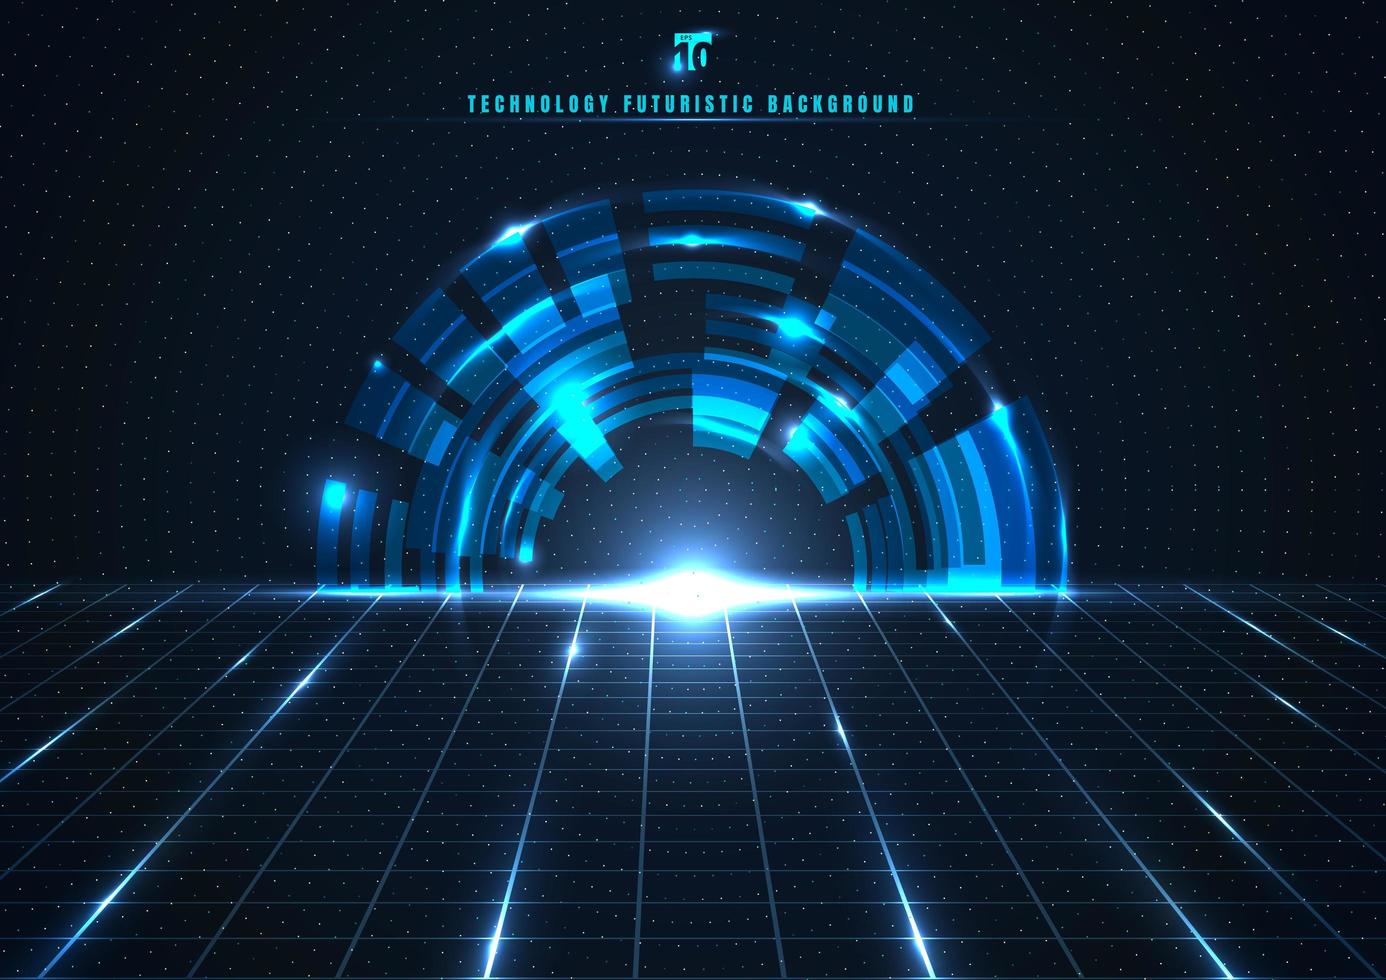 abstrakte Technologie futuristisches digitales Konzept Engineering-Zahnrad mit perspektivischem Gitter und Beleuchtung glühender Partikel punktiert Elemente auf dunkelblauem Hintergrund. vektor